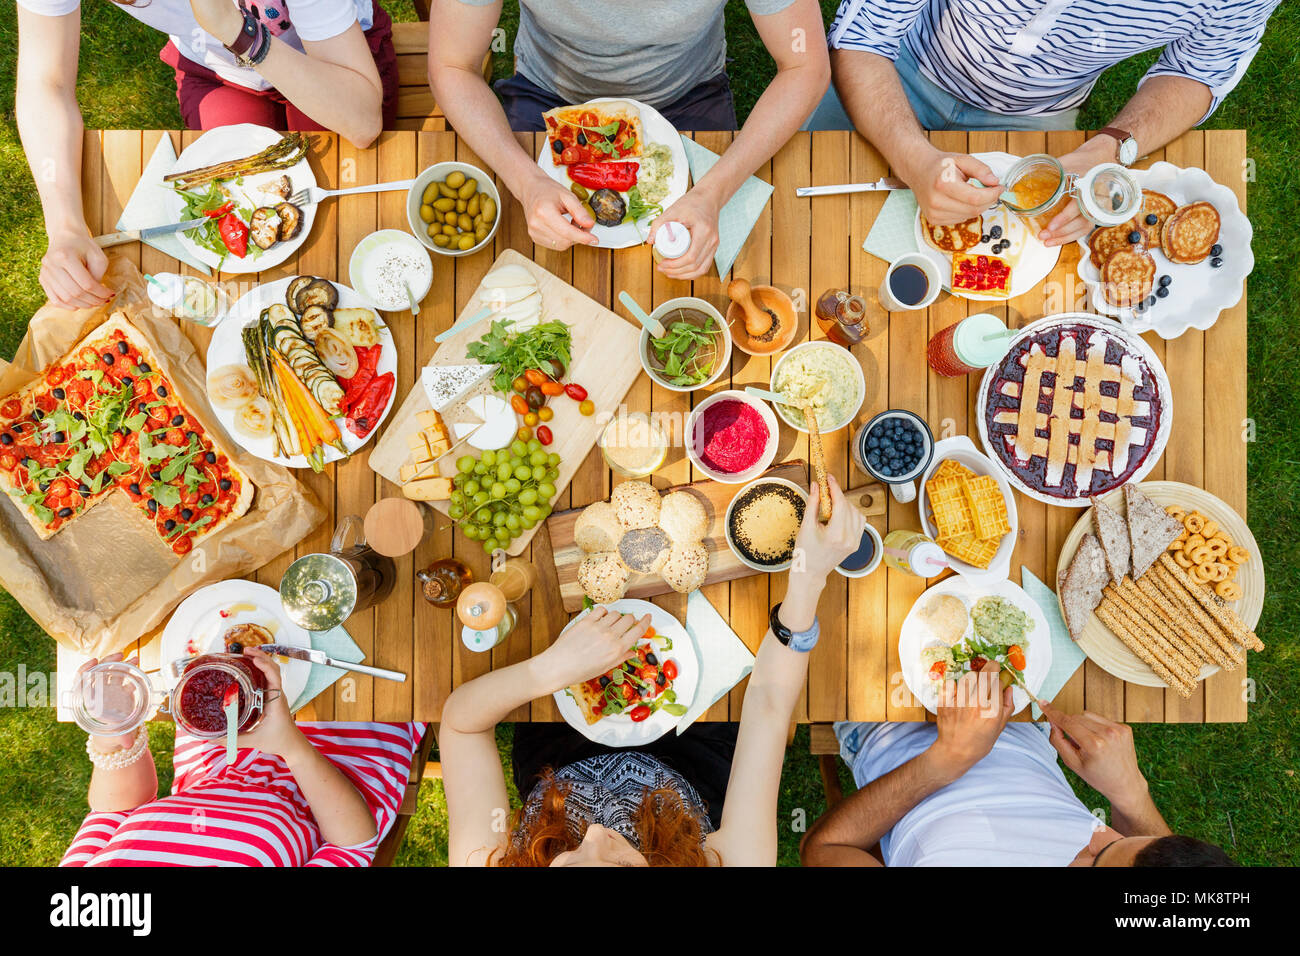 Gli amici di mangiare cibo sano come vegan pizza e frutta all'aperto nel parco su un tavolo rustico Foto Stock